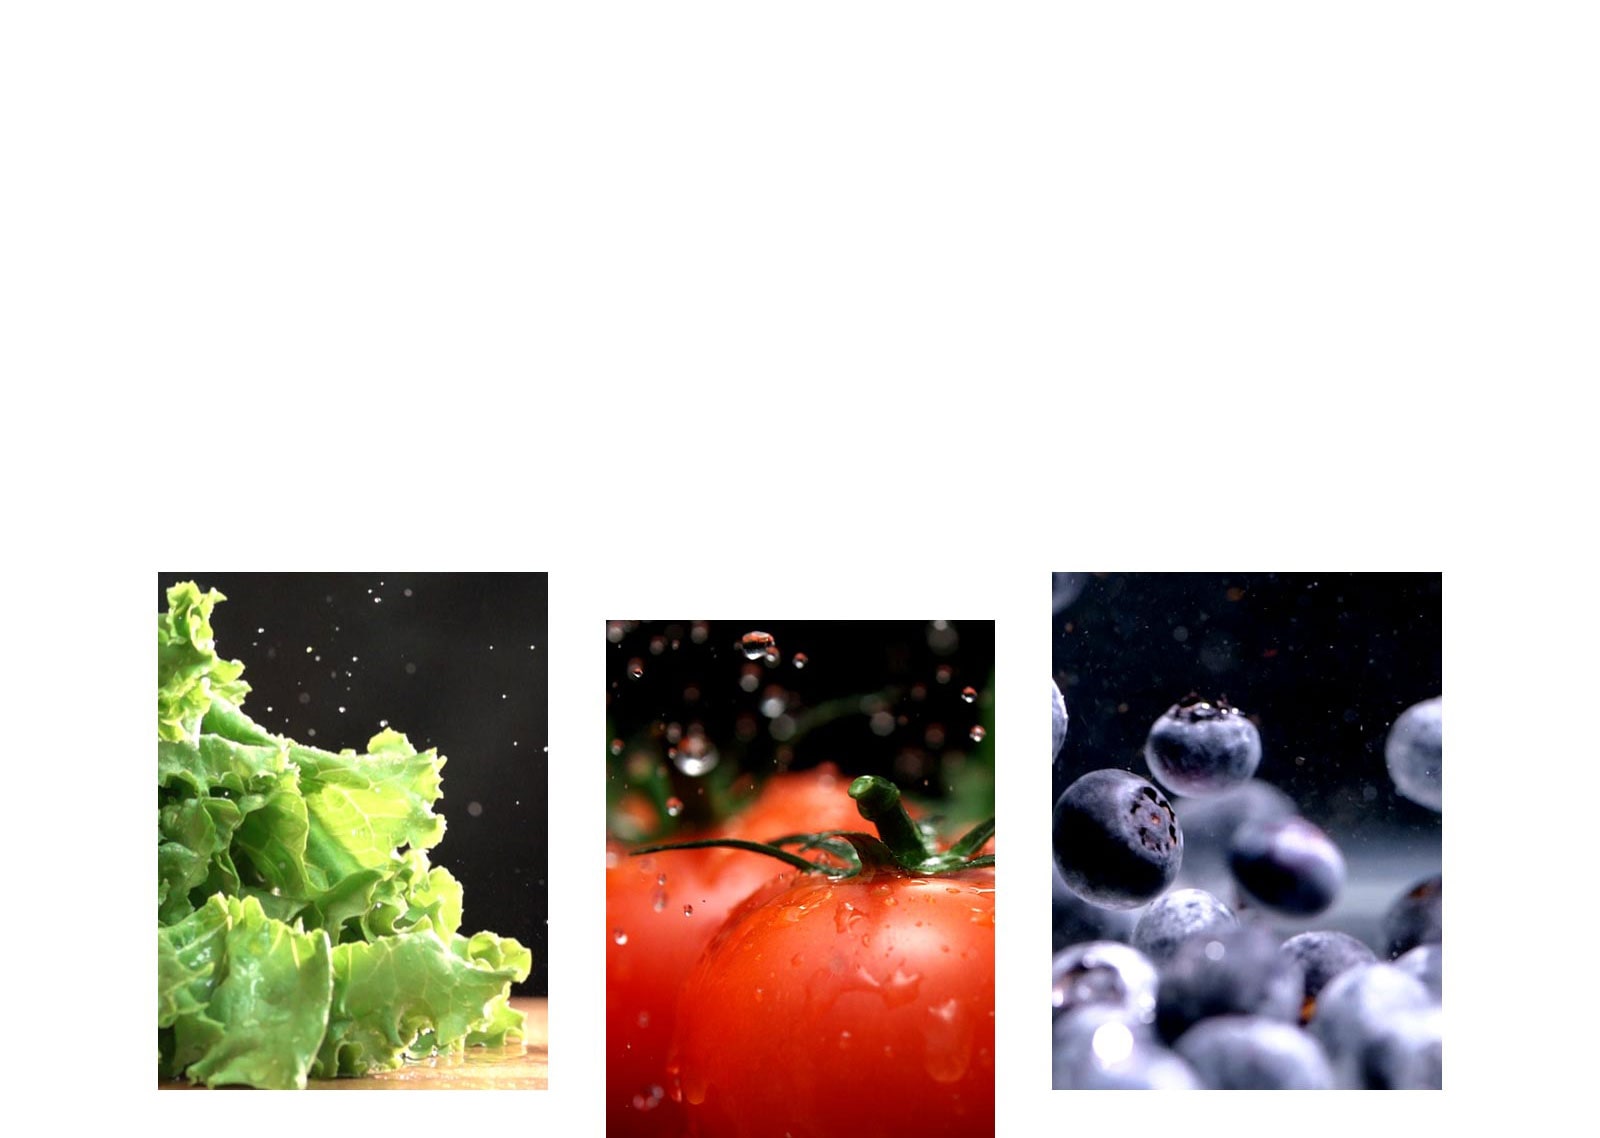 marul, domates ve yaban mersini gibi meyve ve sebzeler üründe taze tutulmaktadır.